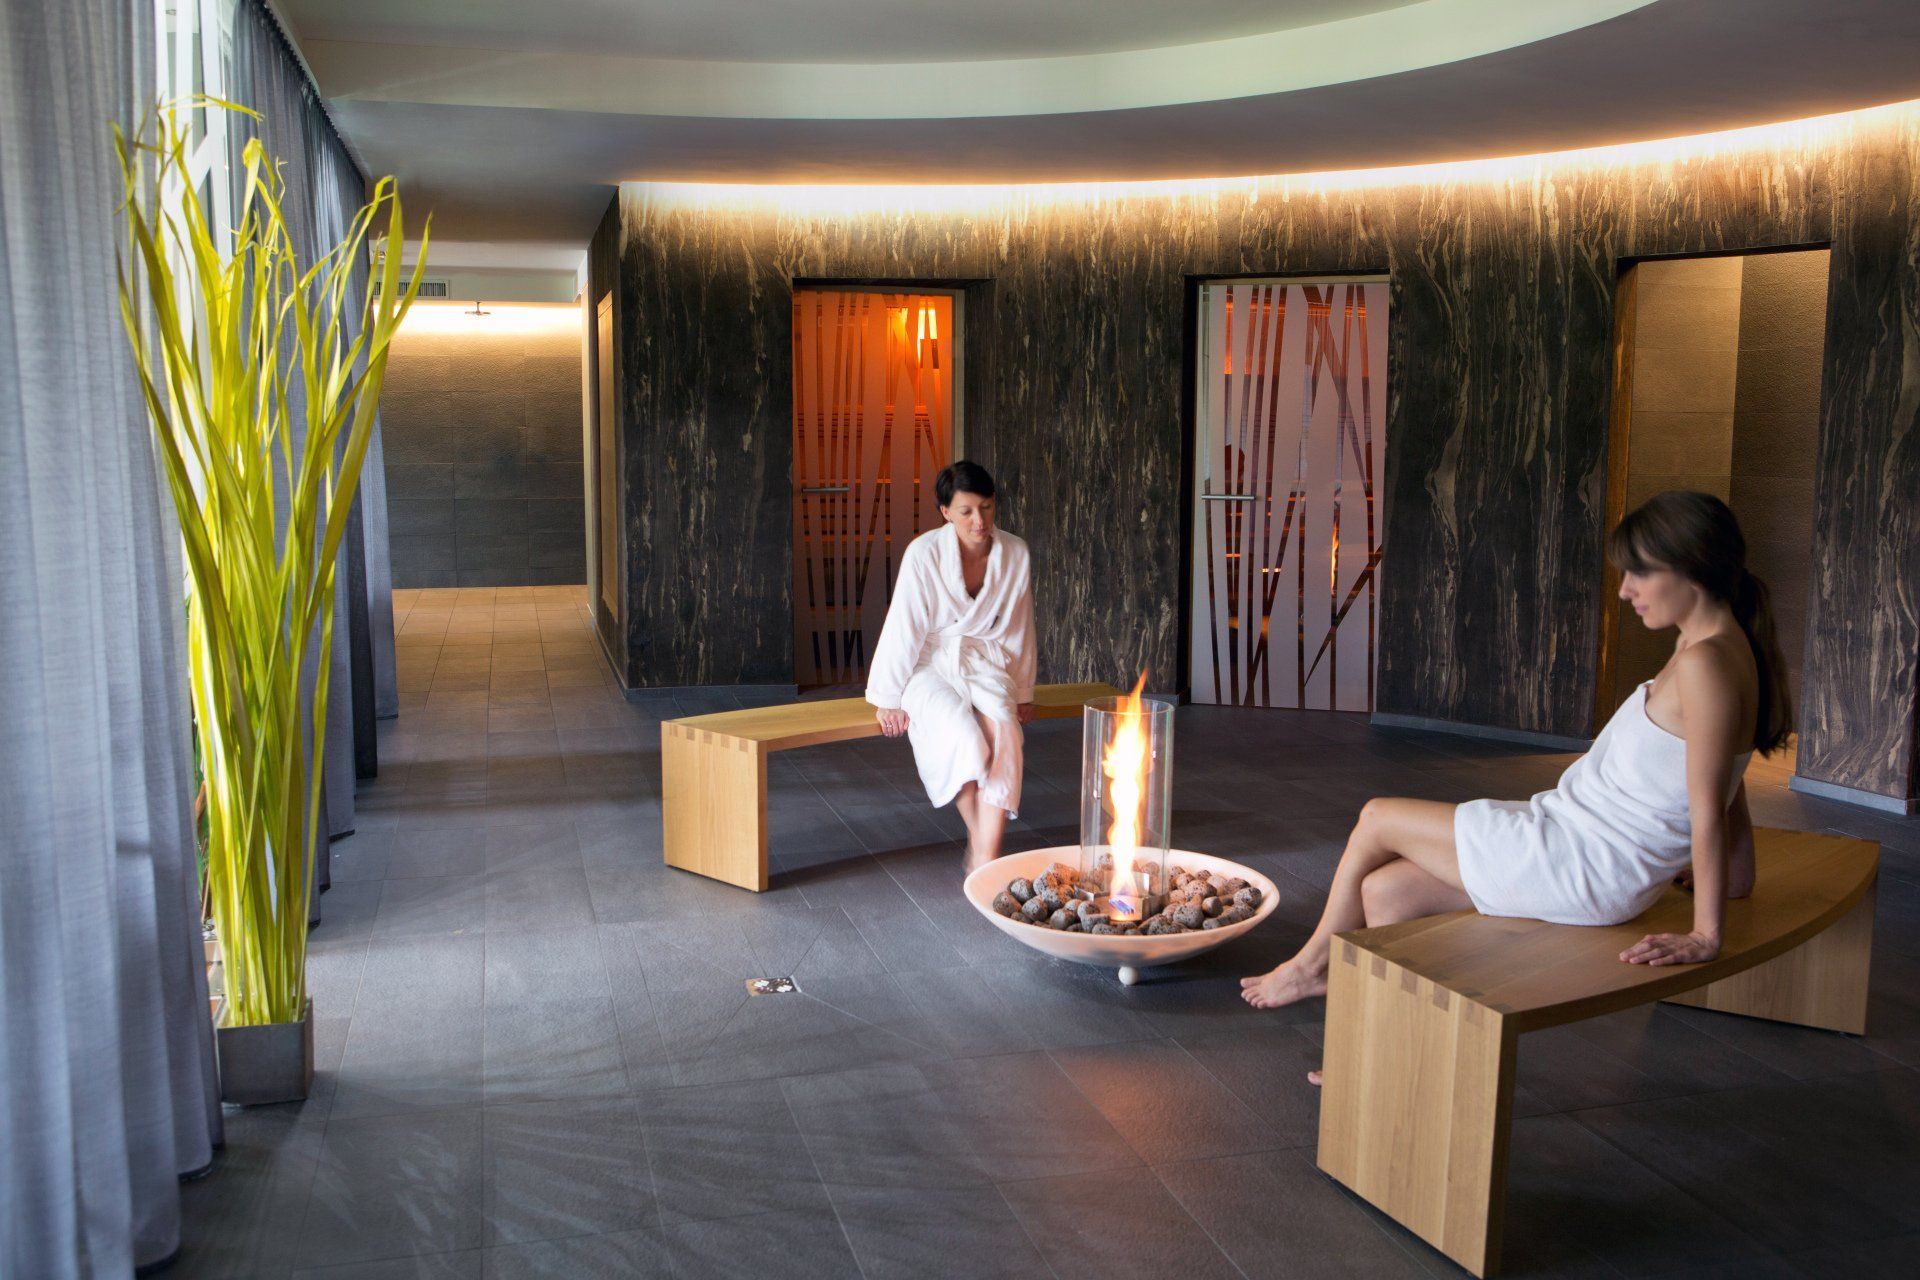 Saunabereich des Hotels Ritzenhof  © Catherine Stukard